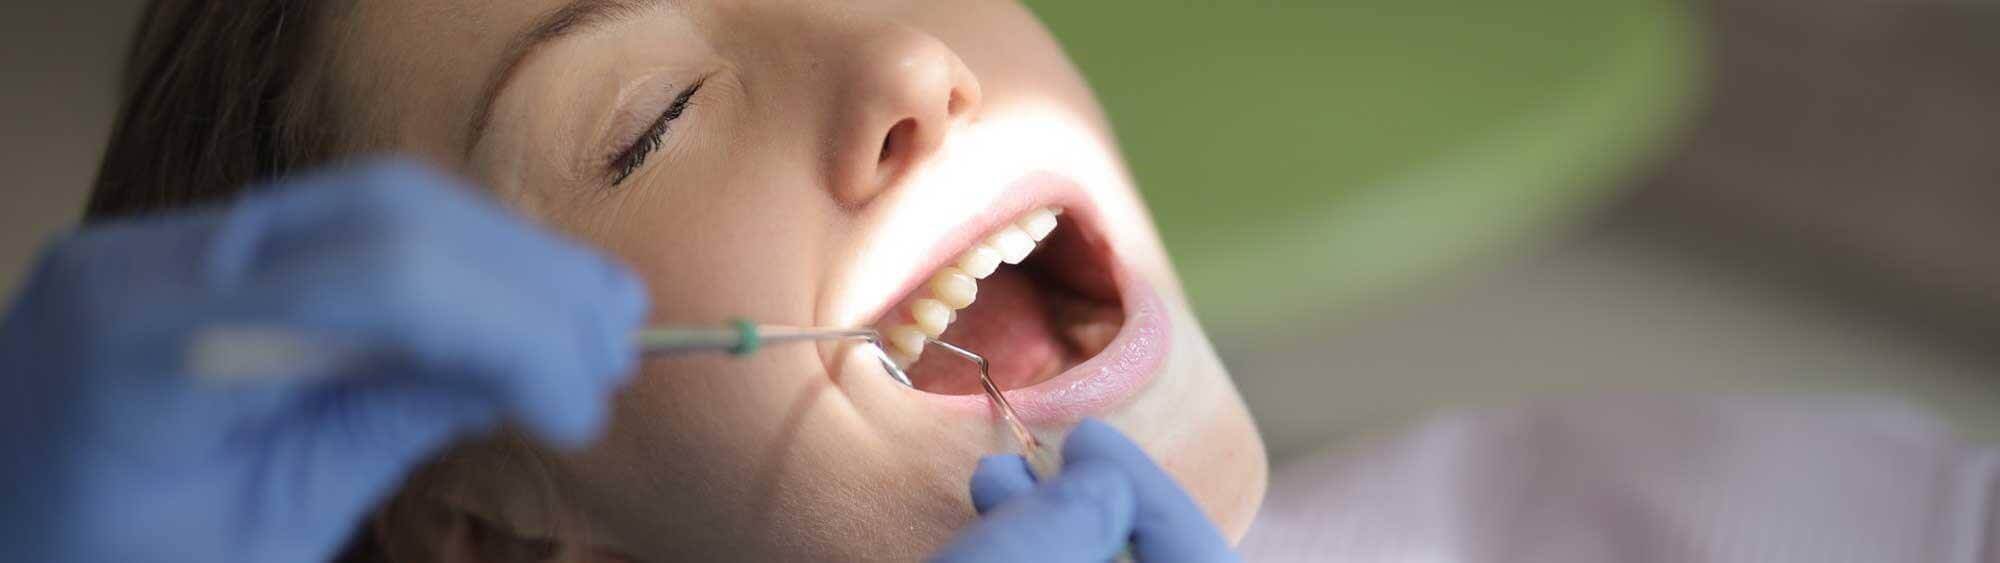 Preventative dental care Kent - Southview Dental Care